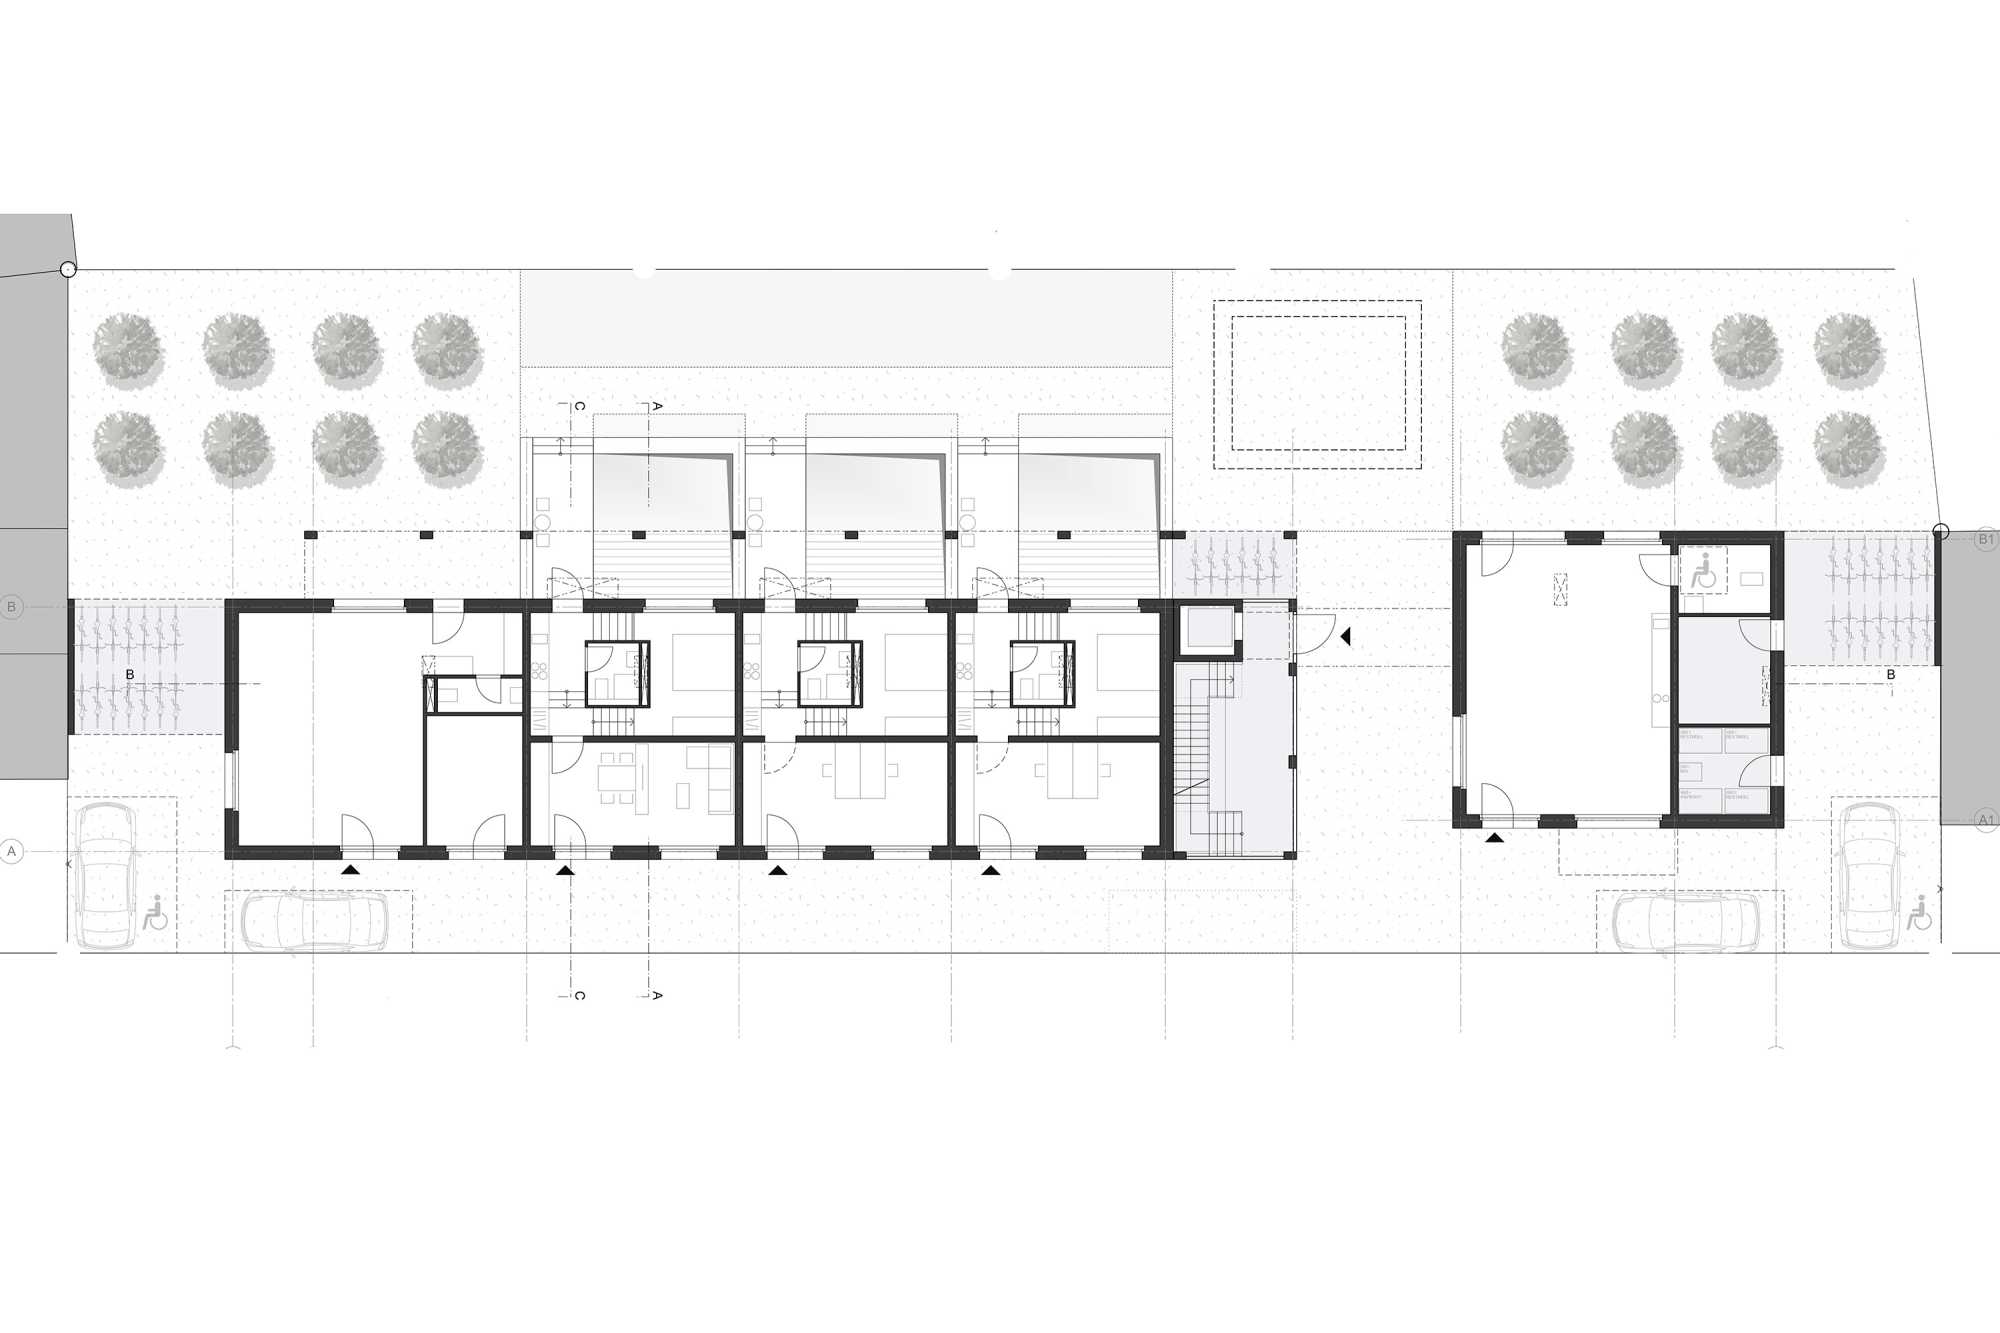 Baugesuch für Wohn- und Ateliergebäude Lichtensteinstraße eingereicht ({project_images:field_row_count})